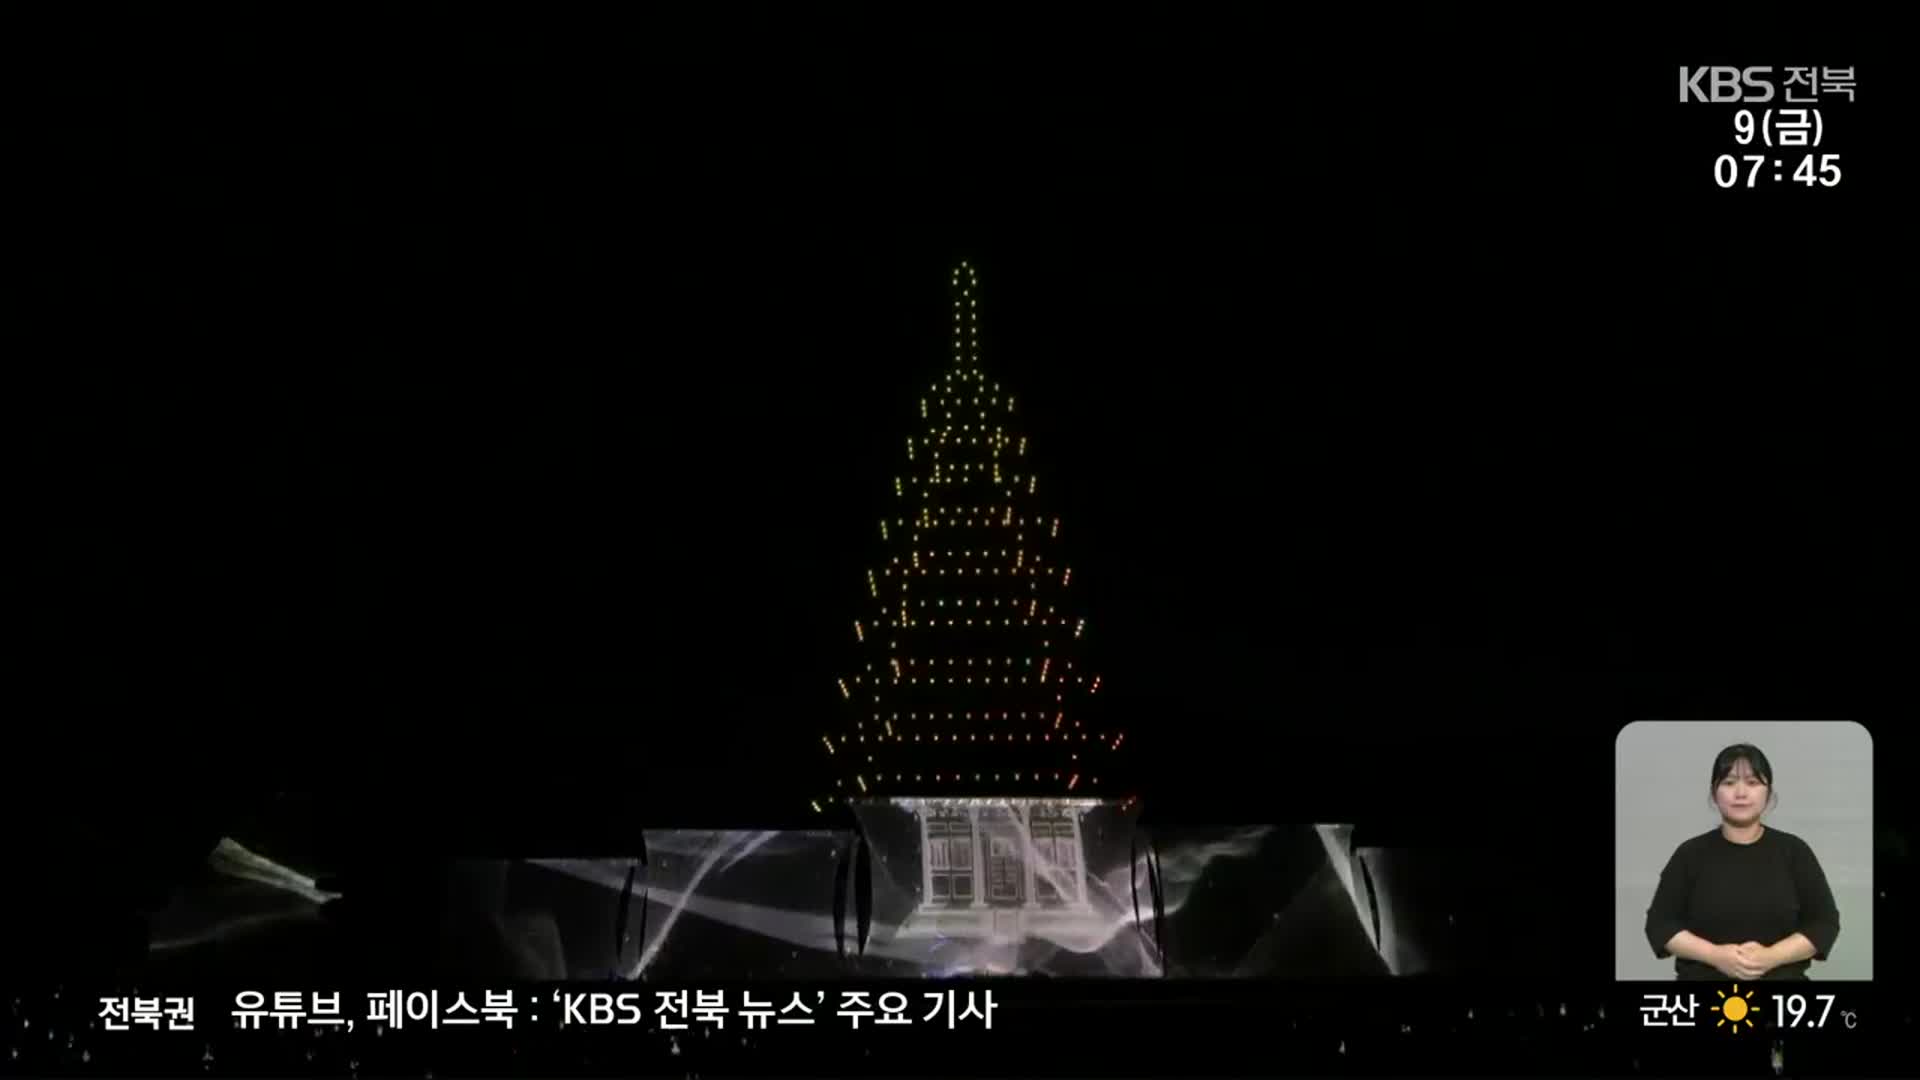 [문화K] ‘빛으로 물드는 가을밤’, 세계유산 미디어아트 개막